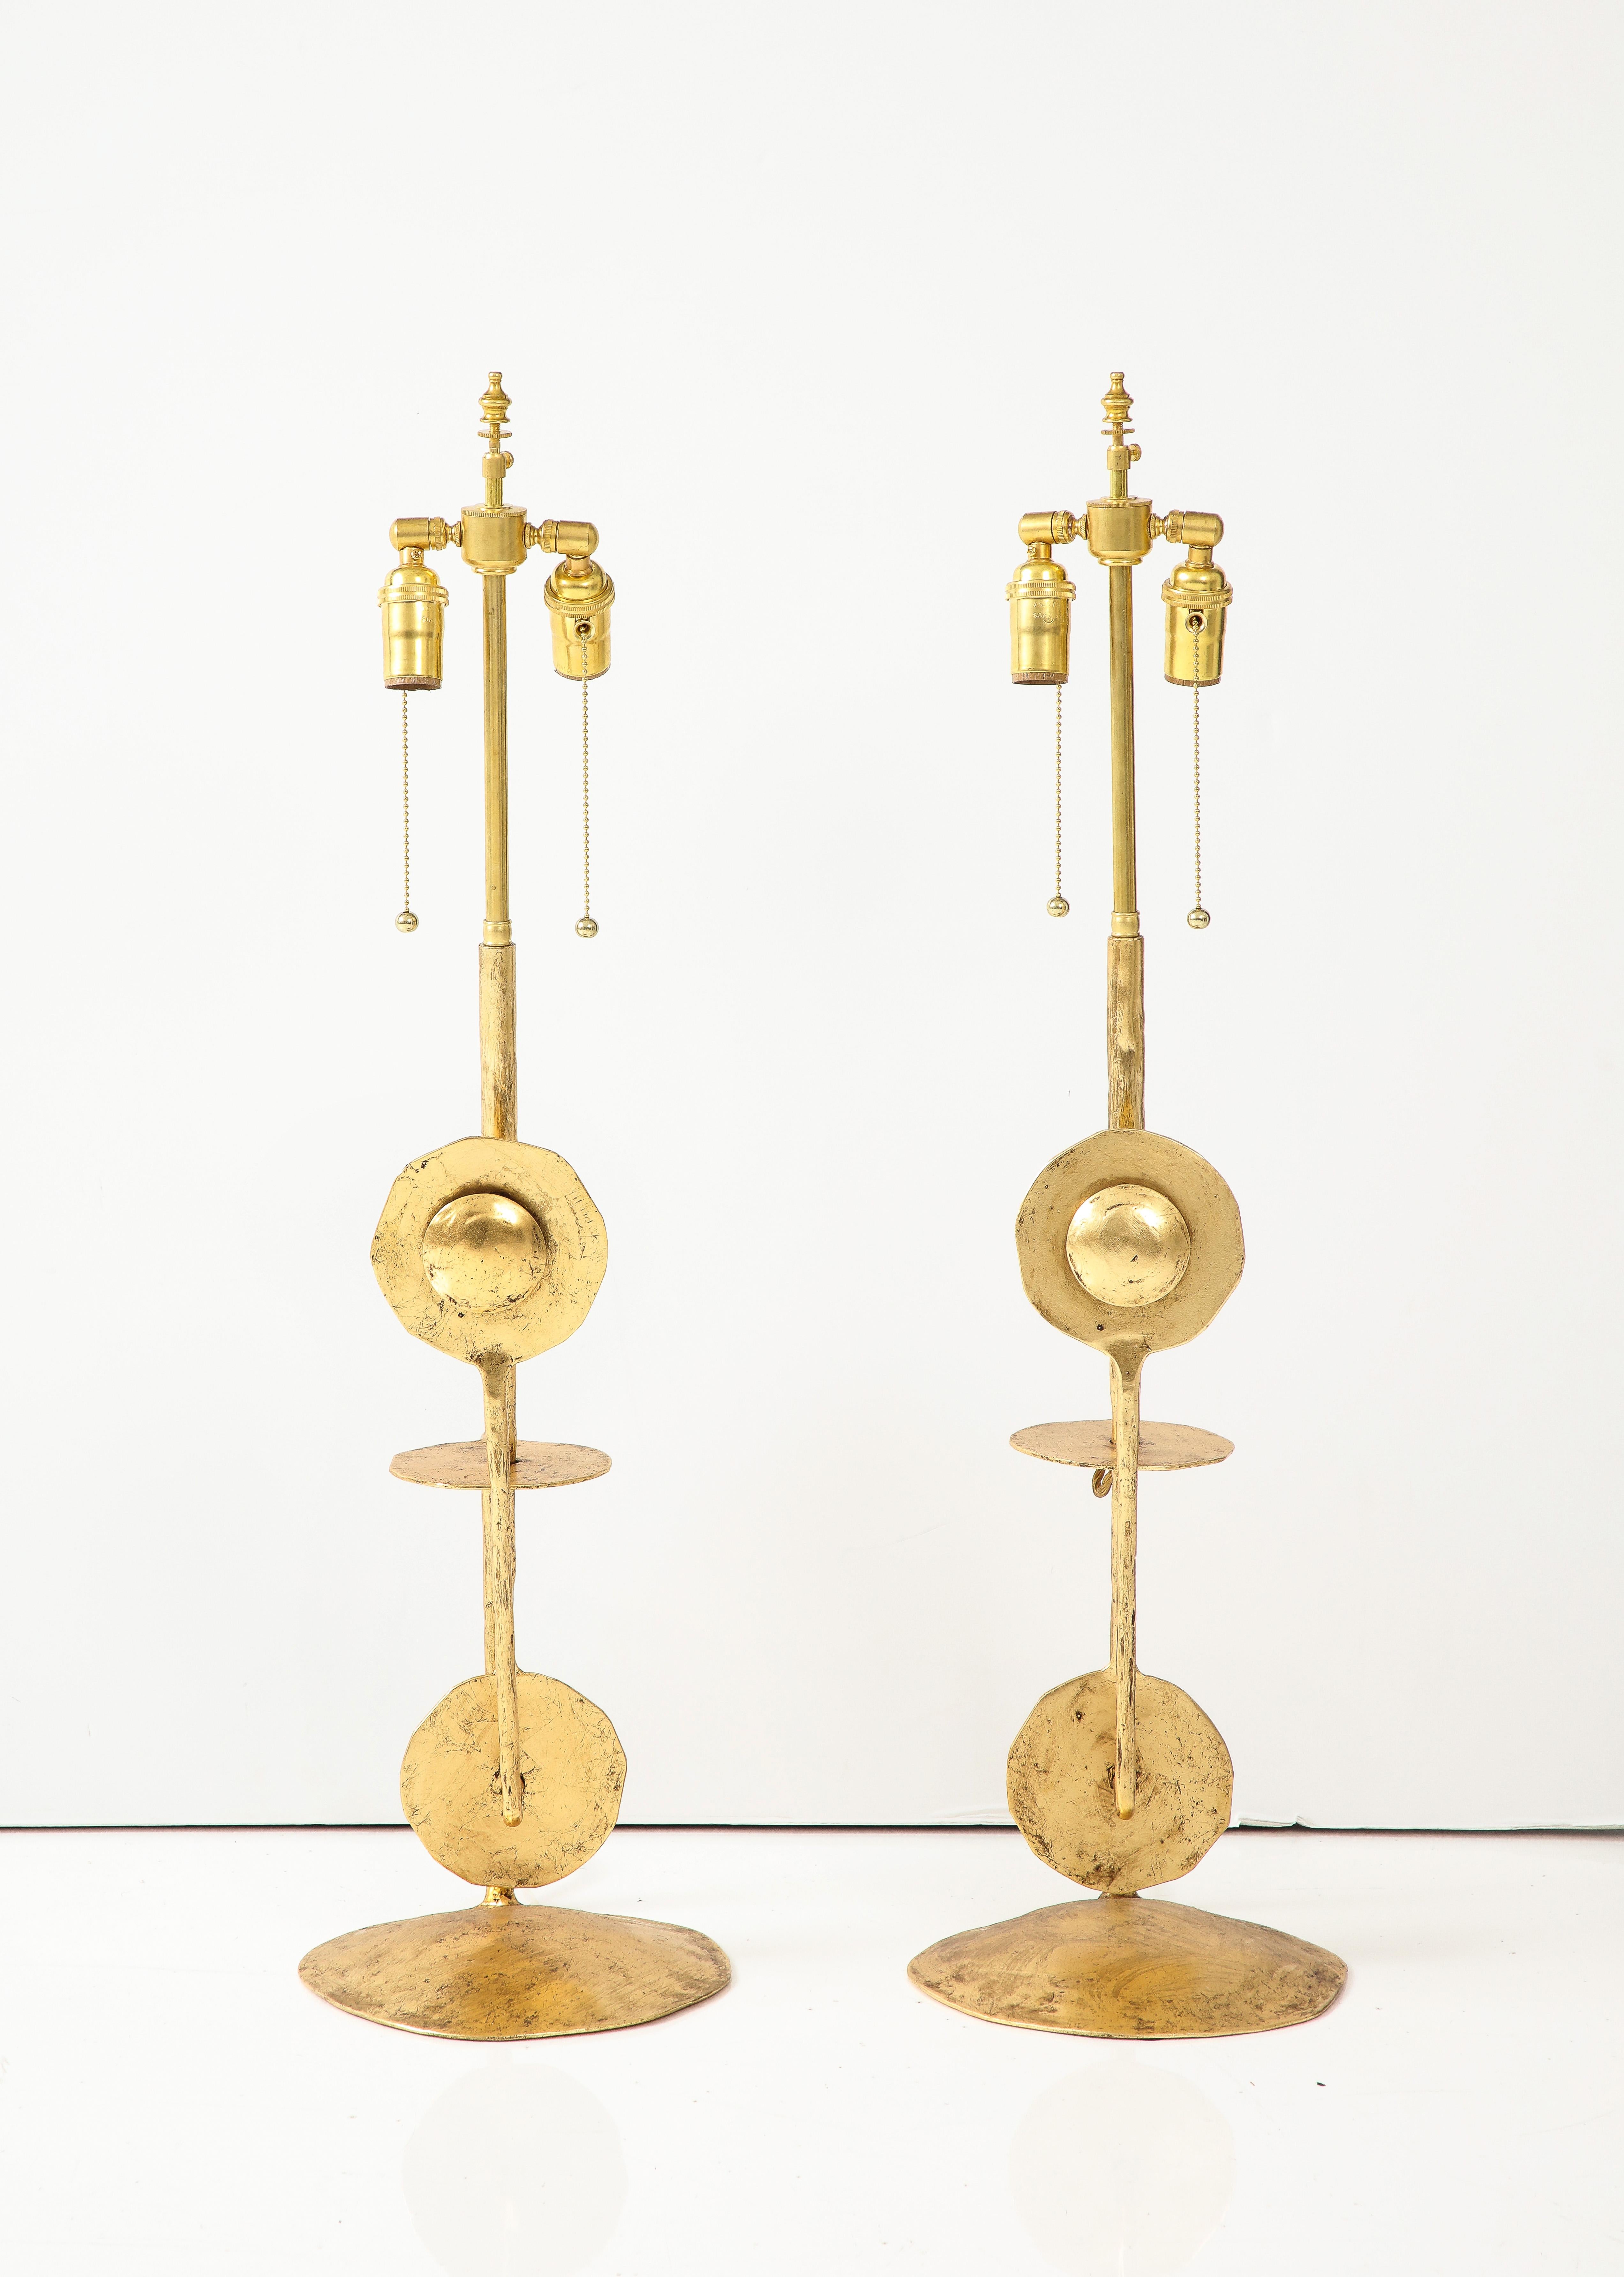 Étonnante paire de lampes de table italiennes en métal doré de style Brutaliste, récemment recâblées avec un cordon de soie, avec une usure et une patine mineures.